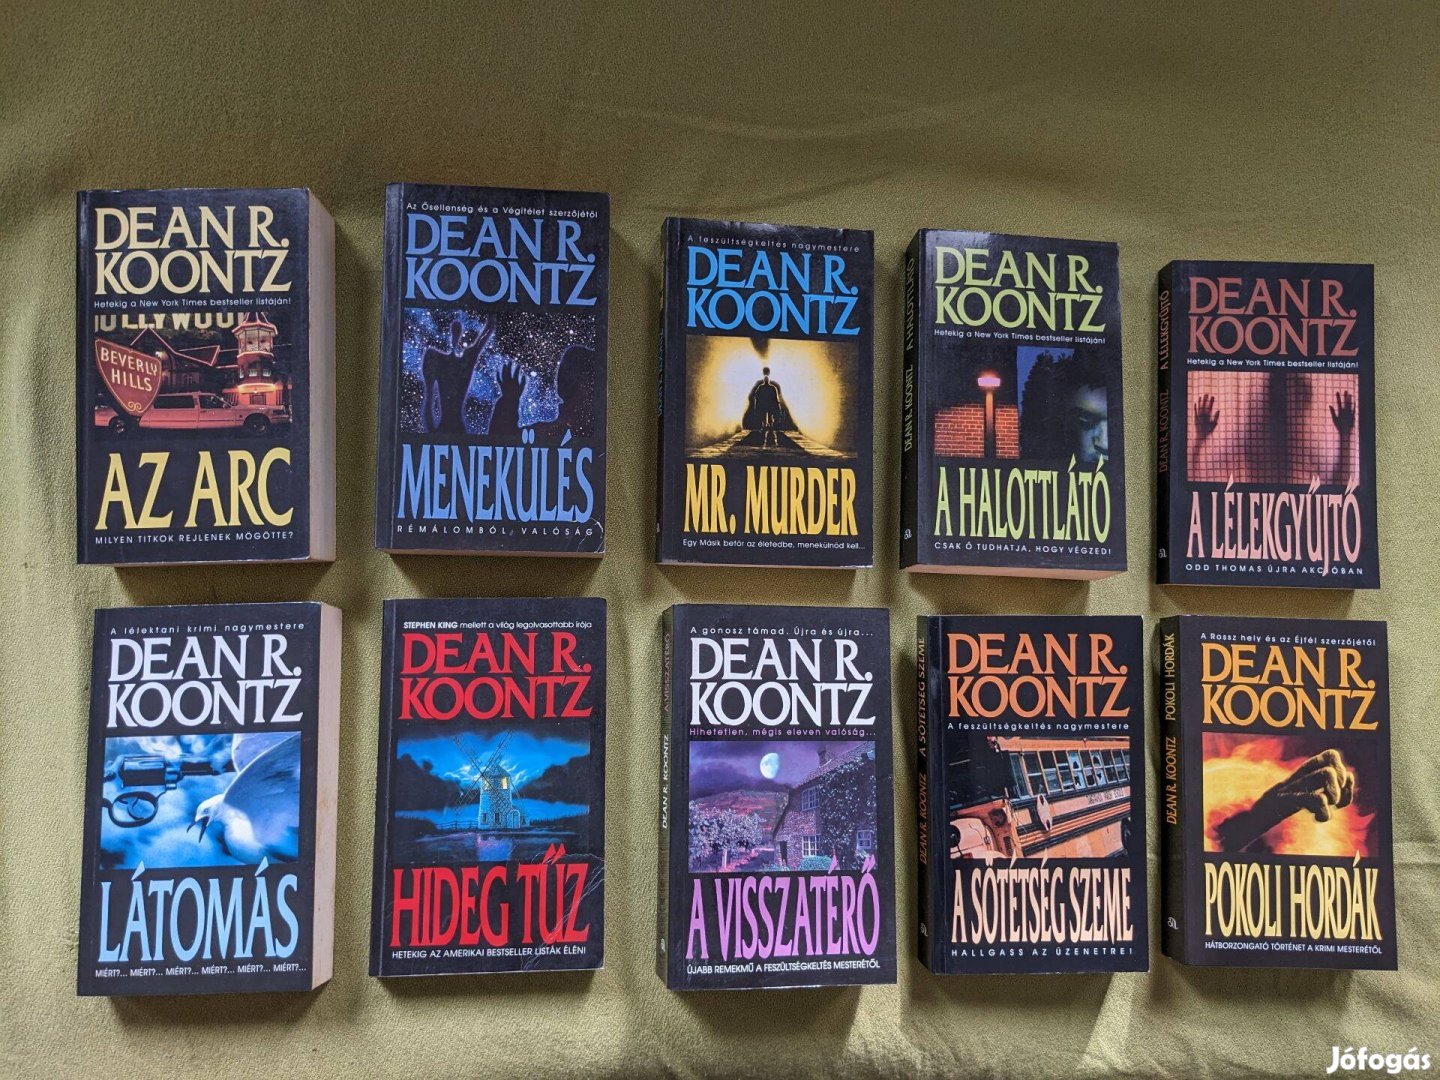 Eladó Dean Koontz könyvek (Az arc, Menekülés, Mr. Murder, .)